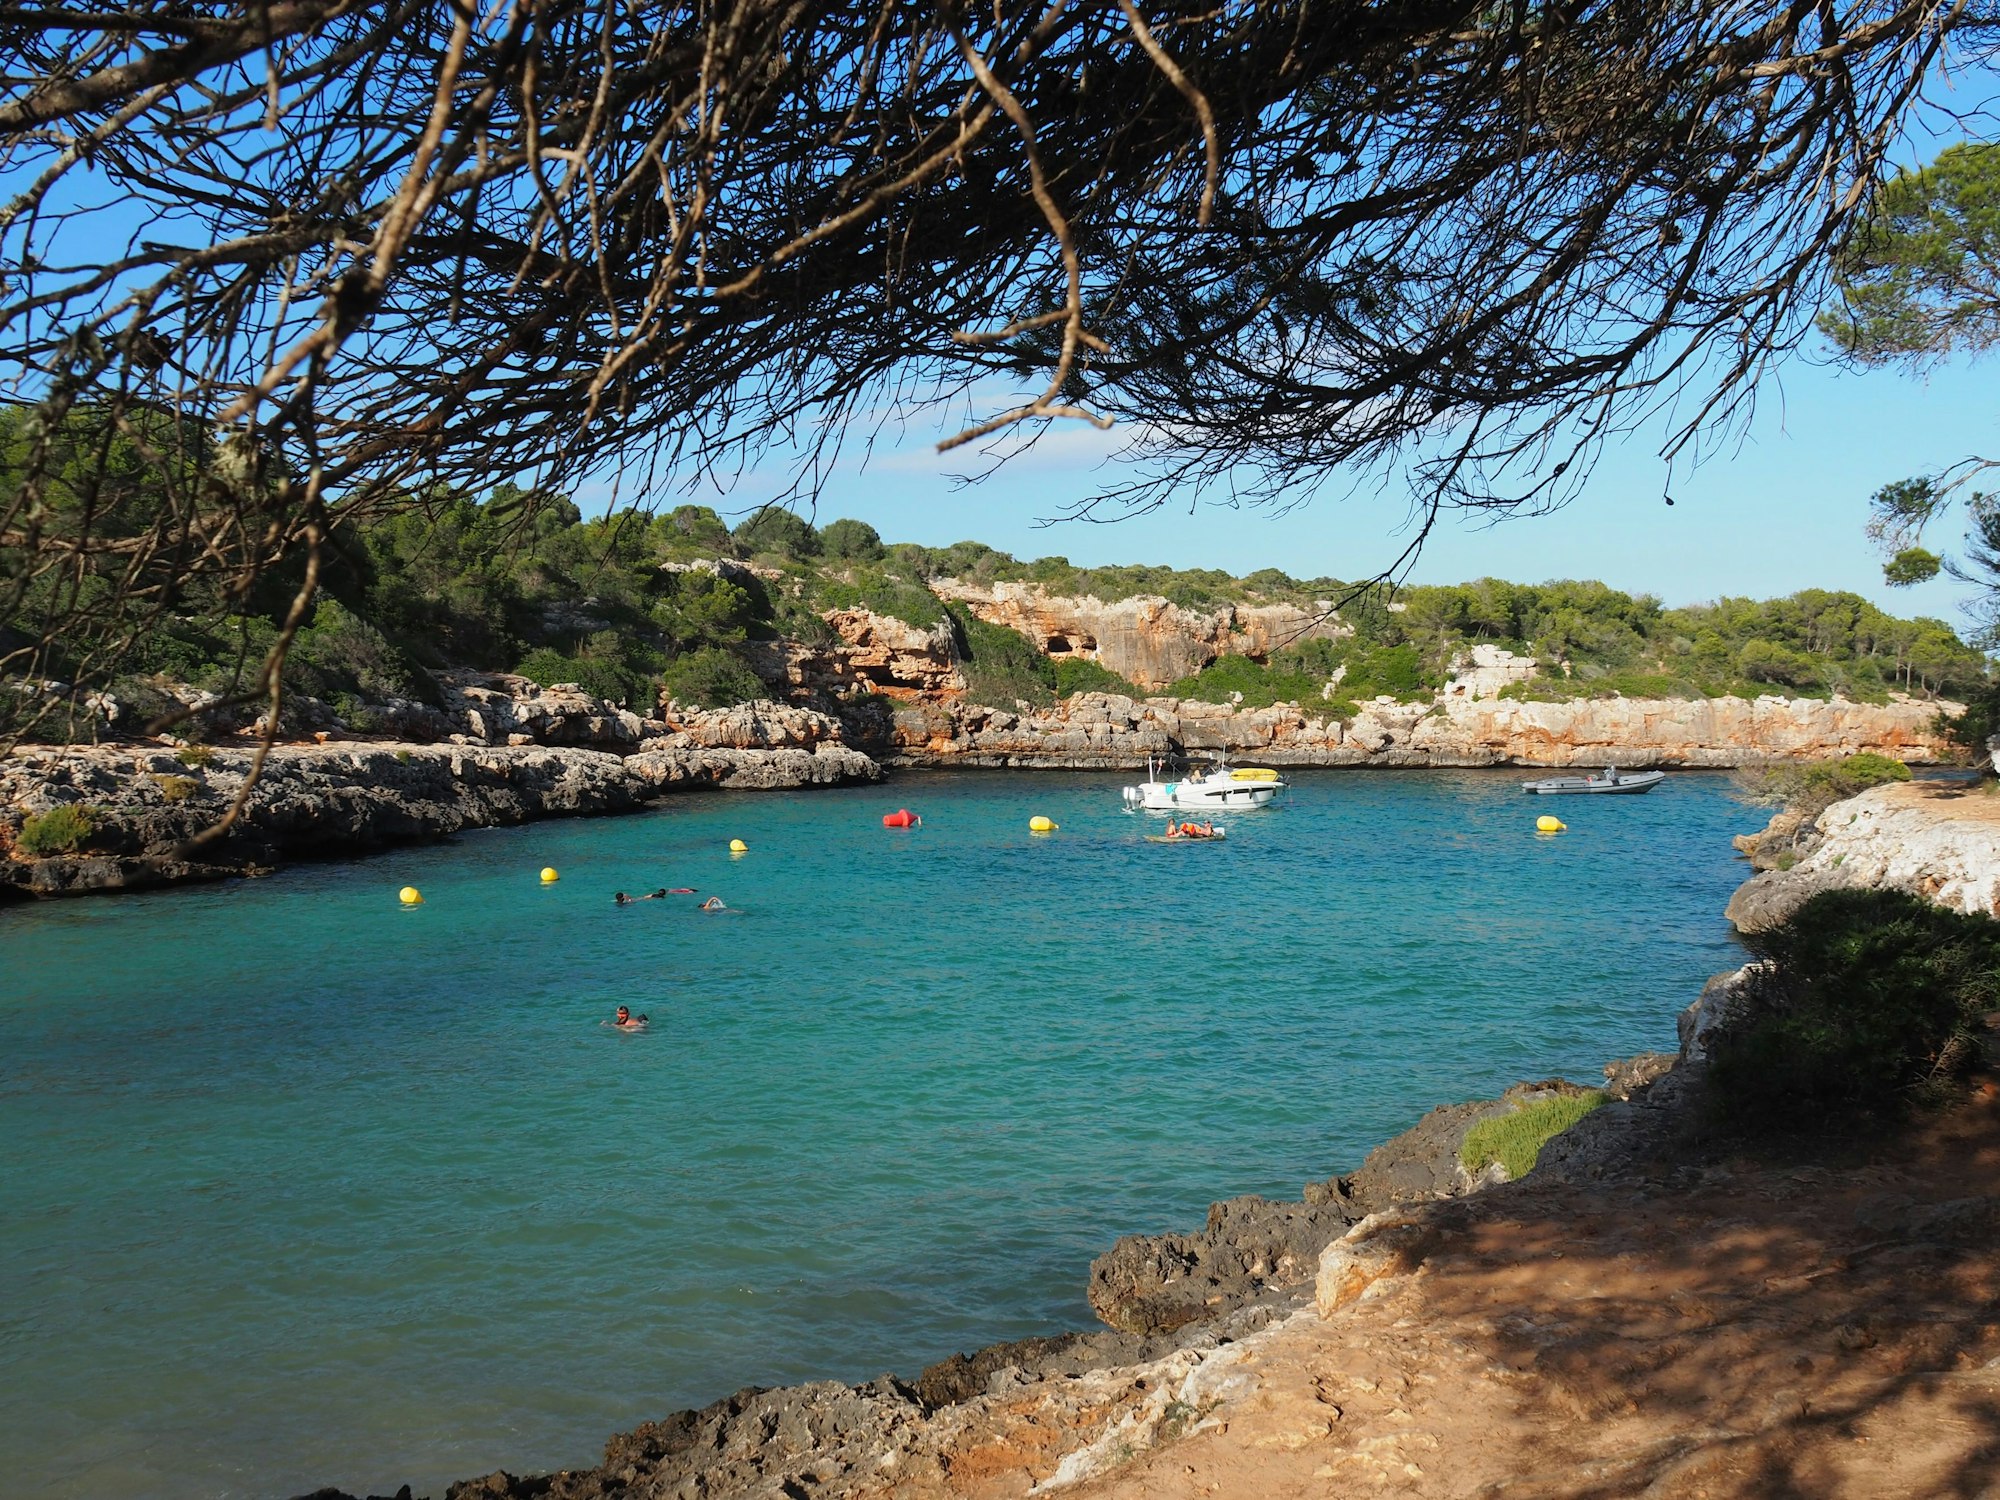 Die Bucht von Cala Sa Nau auf Mallorca, hier im Juli 2020, mit schwimmenden Menschen, Bojen und Booten im Wasser.